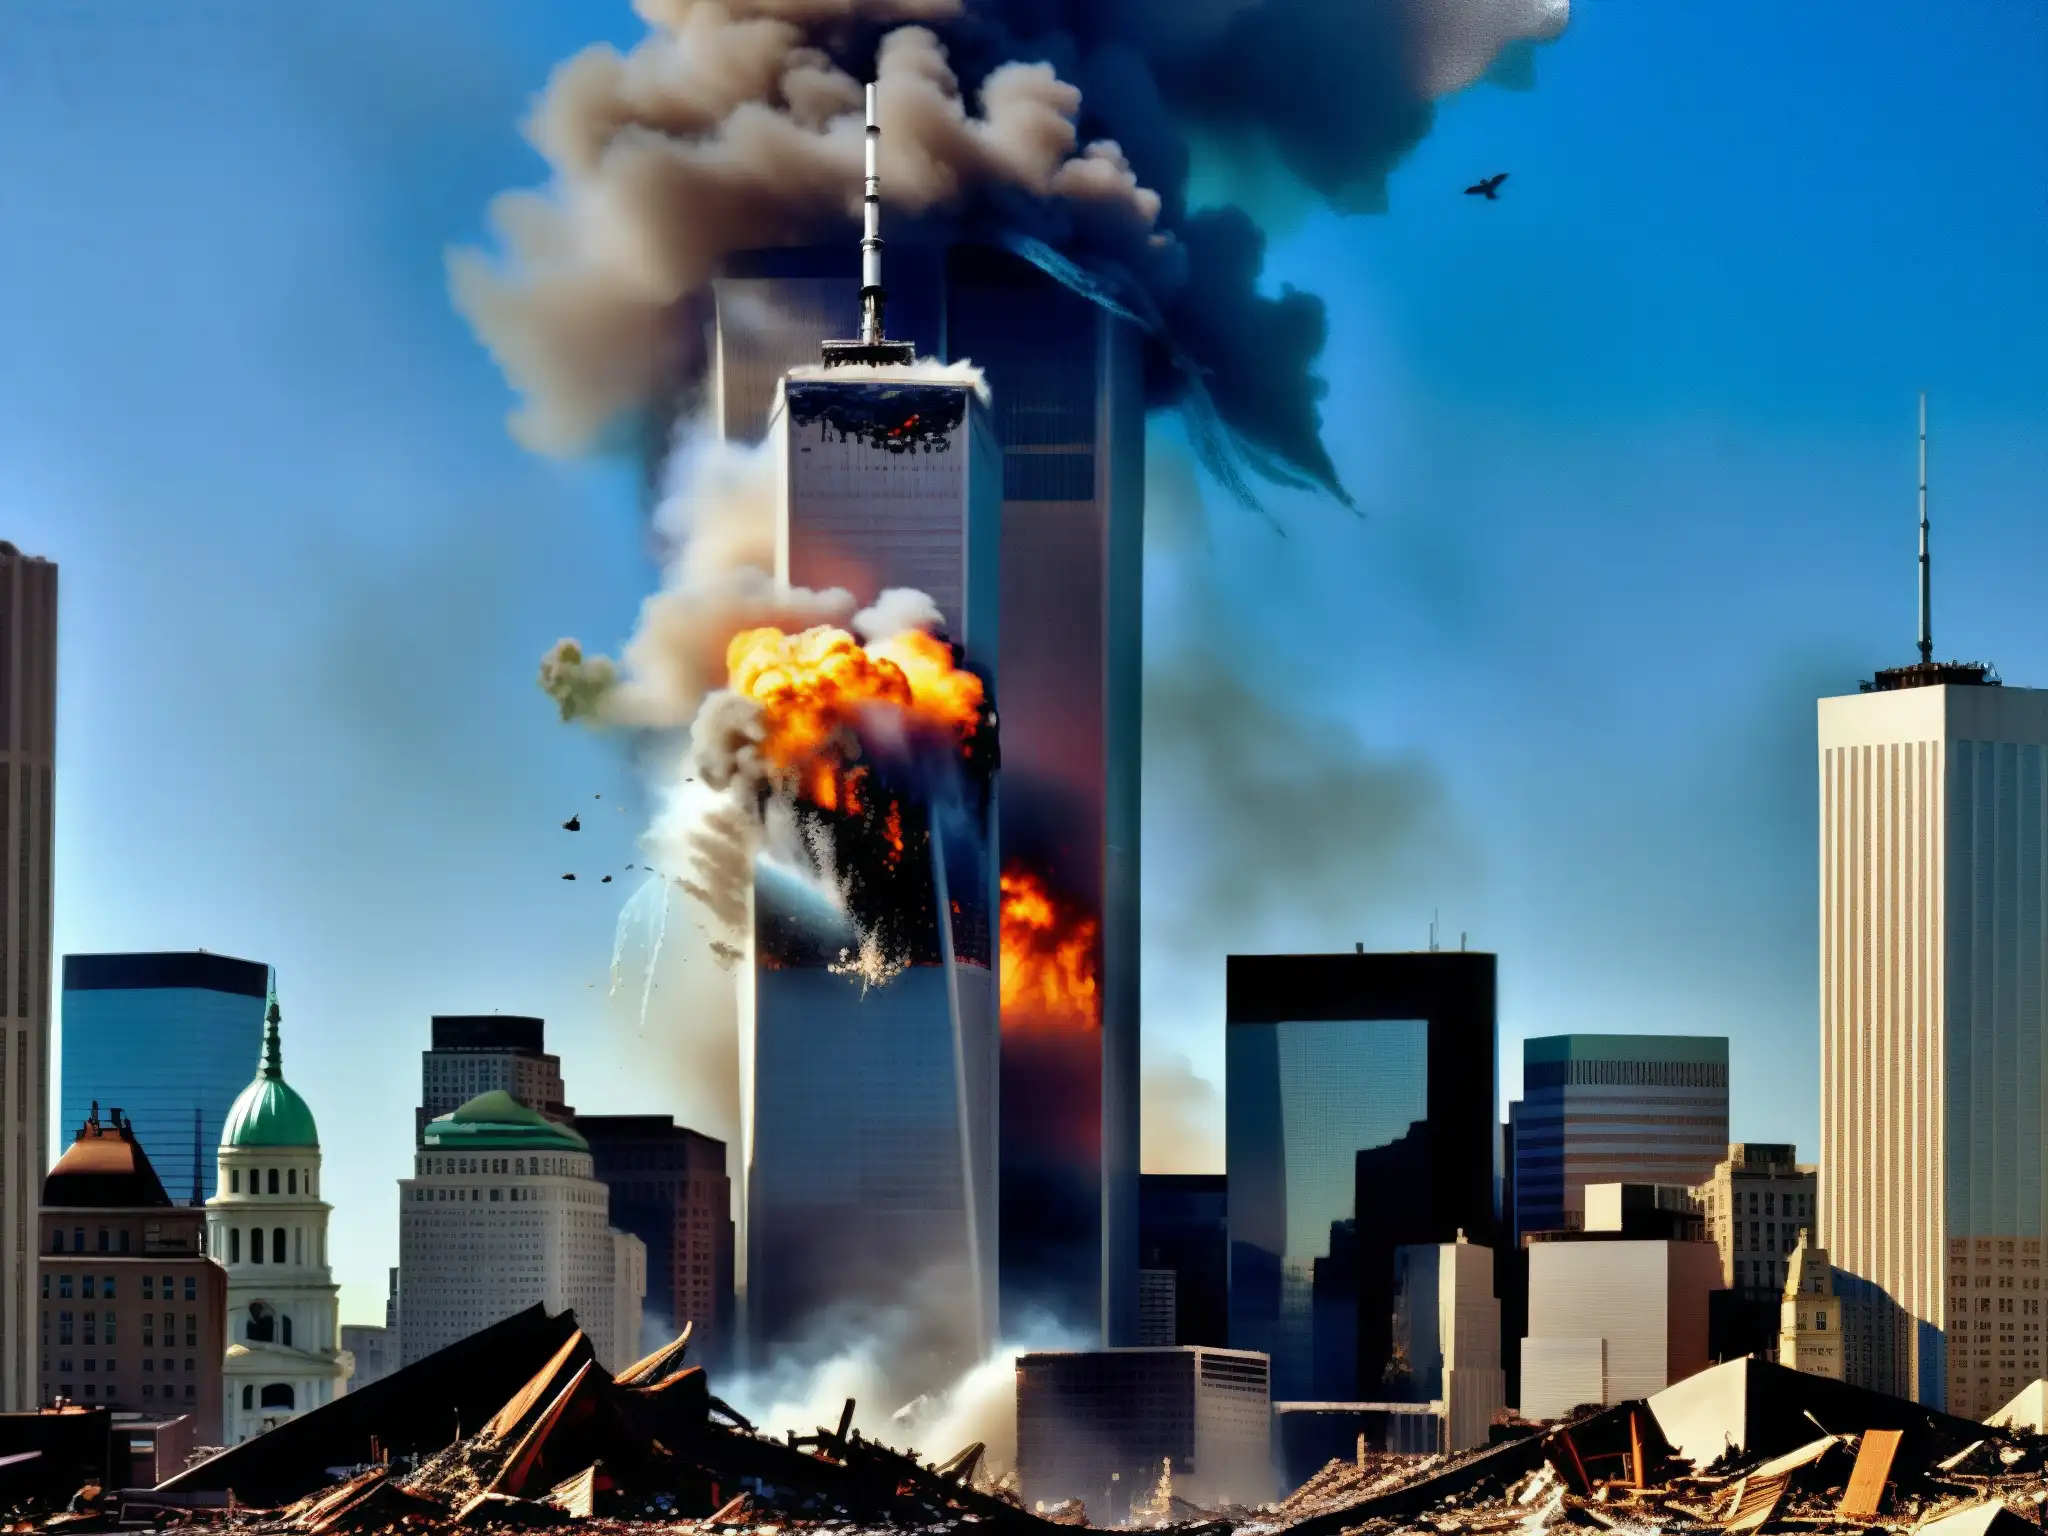 La imagen muestra la devastadora demolición controlada de las Torres Gemelas, con escombros esparcidos y el caos posterior al 11-S